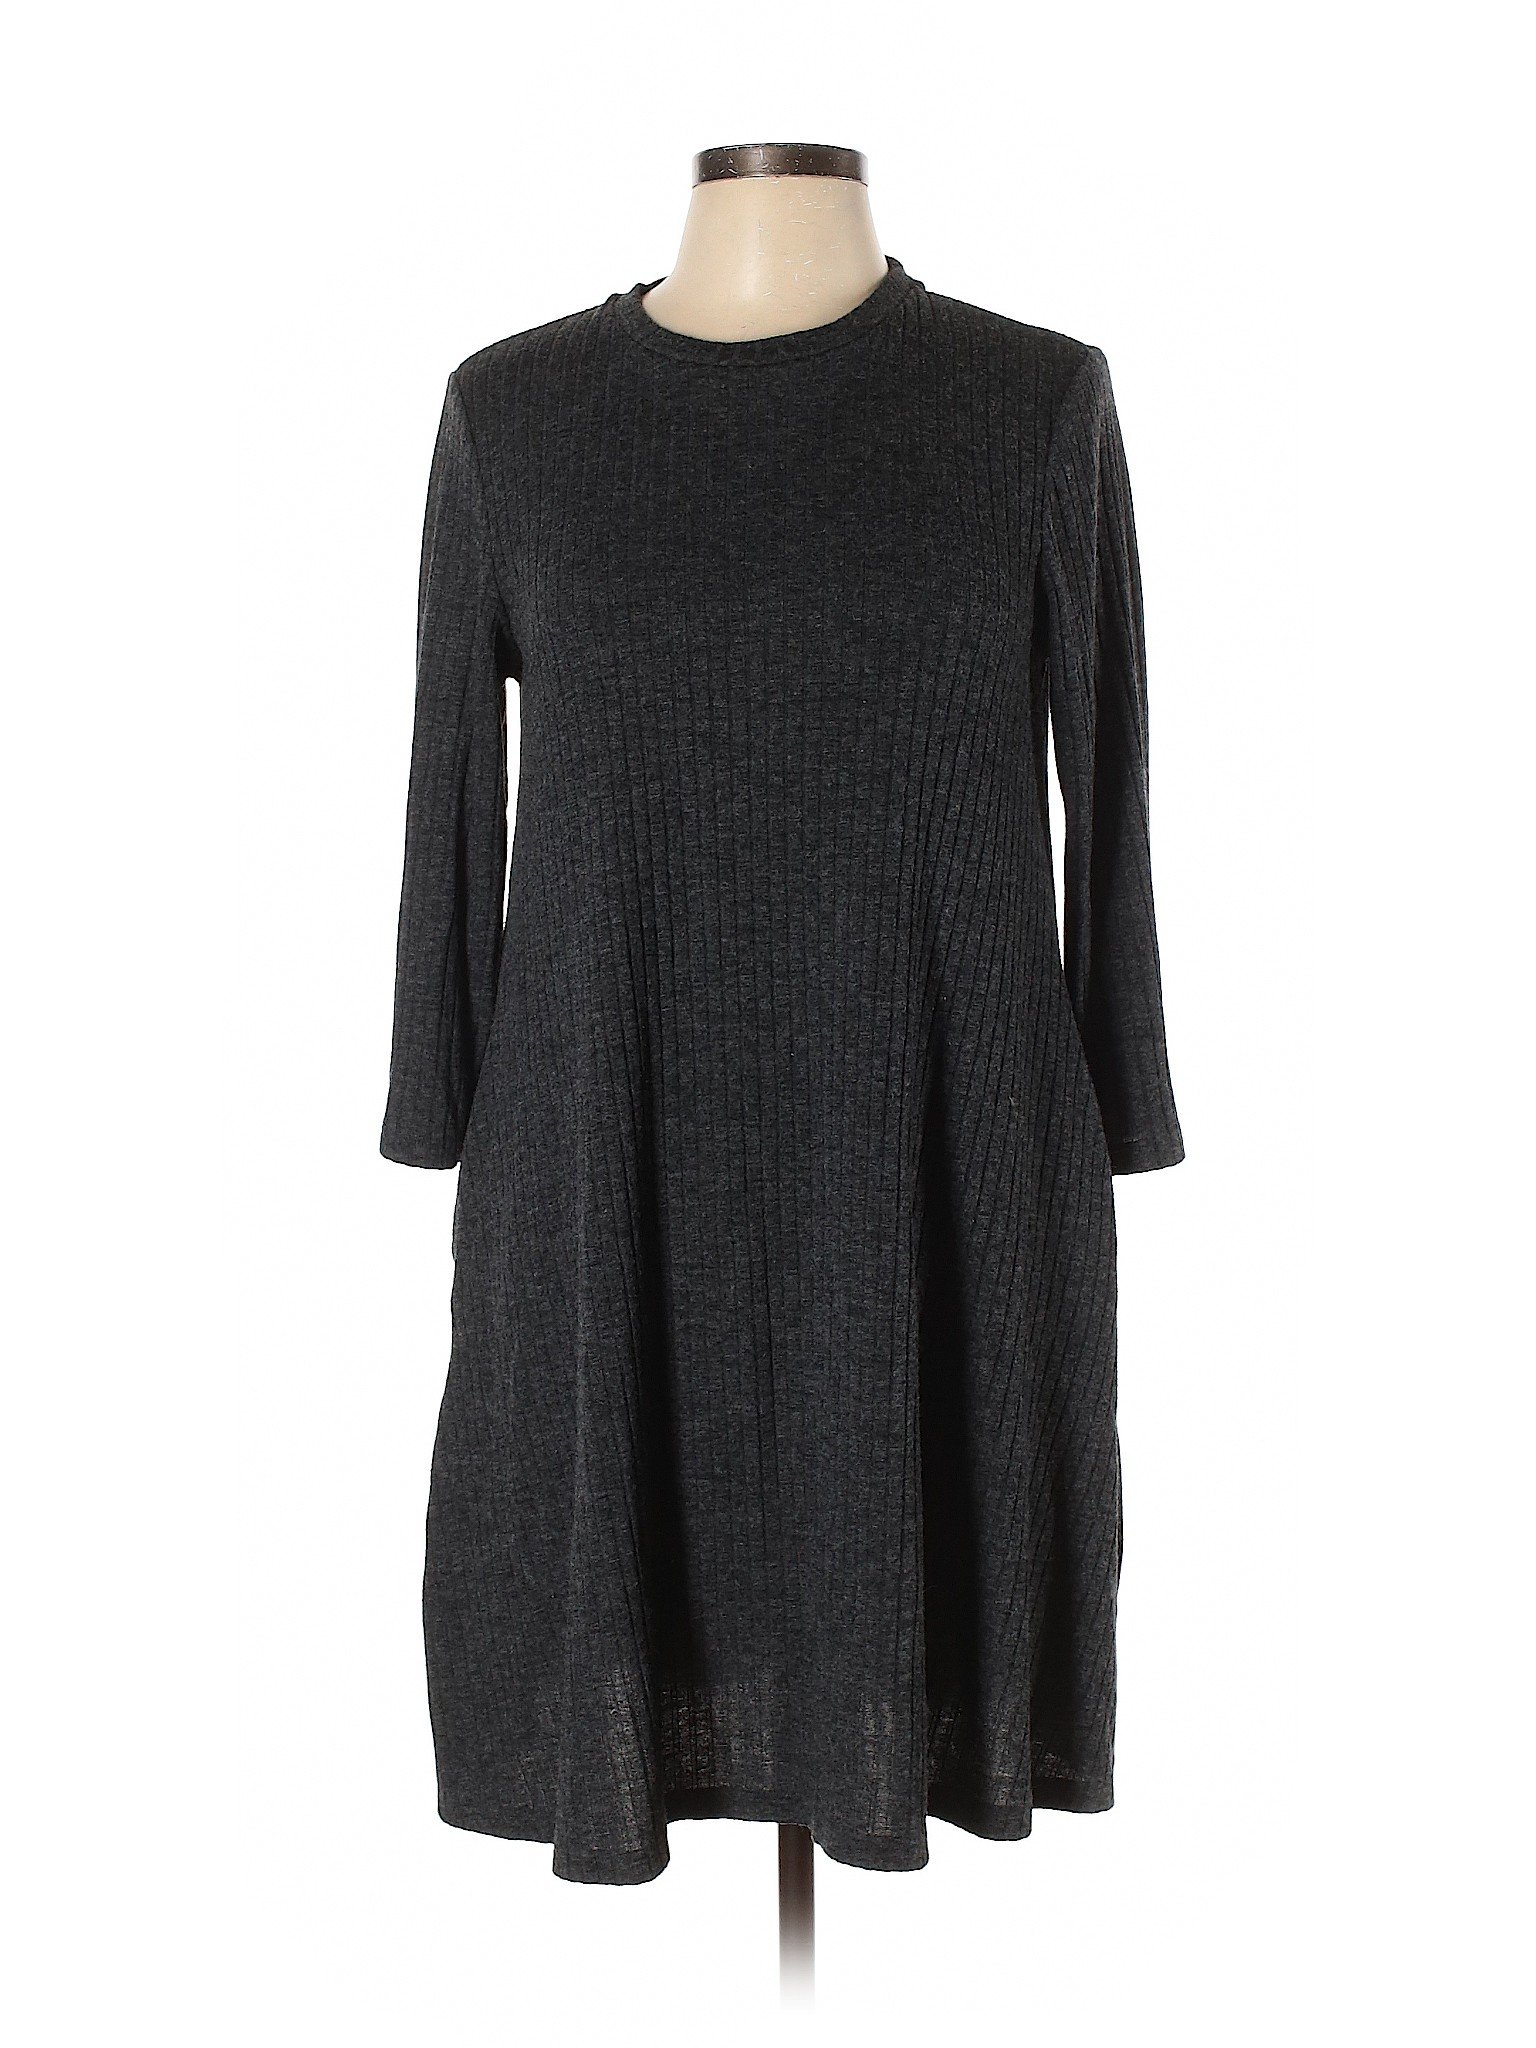 Uniqlo Women Black Casual Dress L | eBay